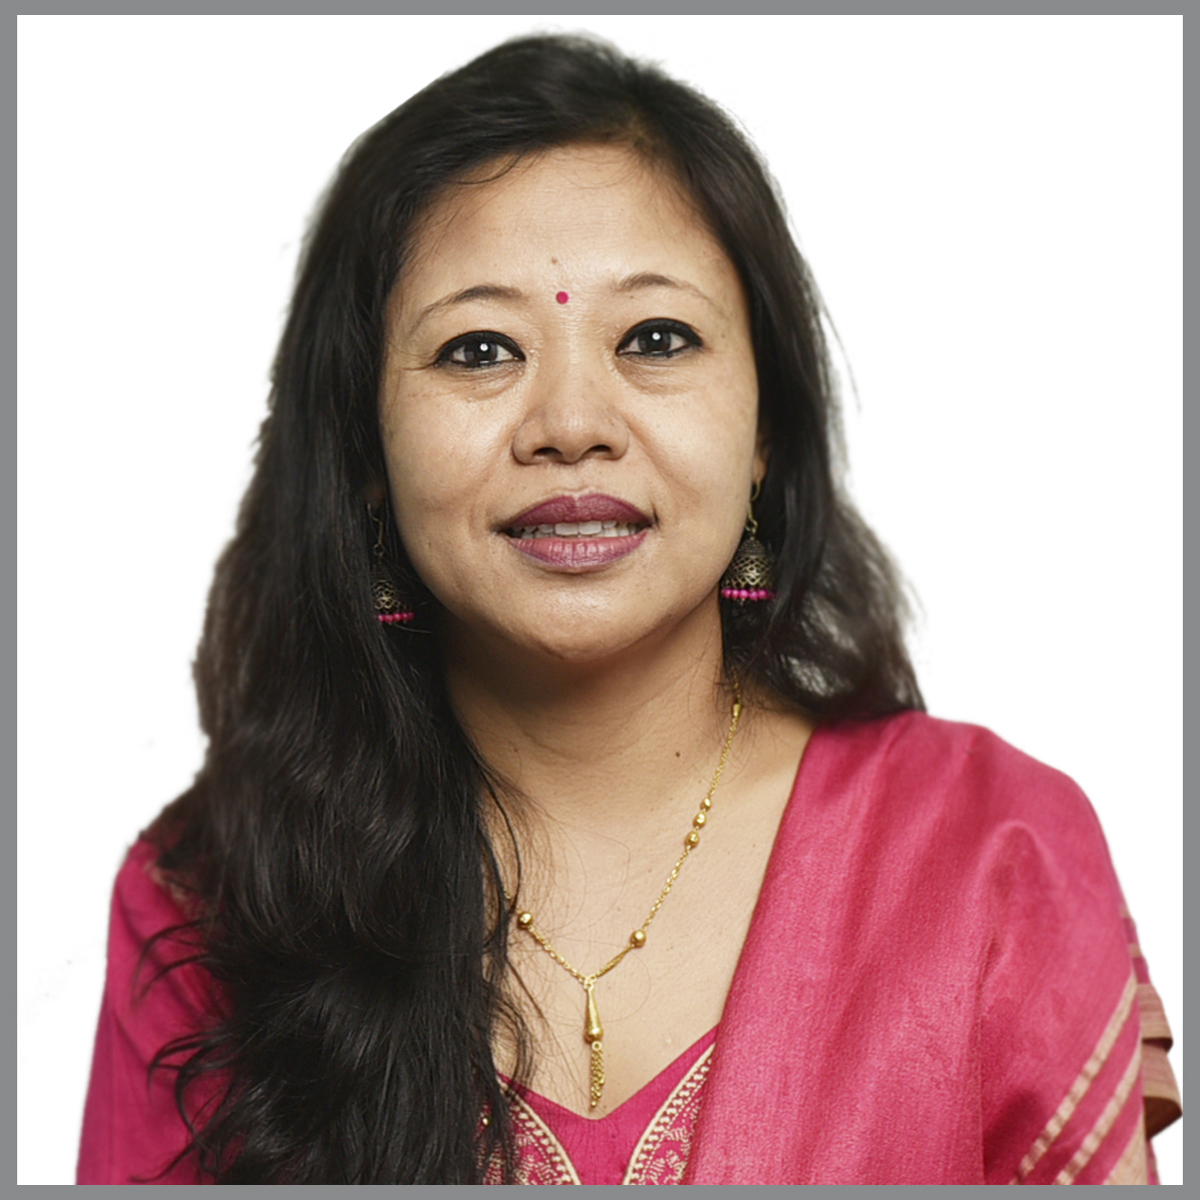 Ms. Pranita Thapa